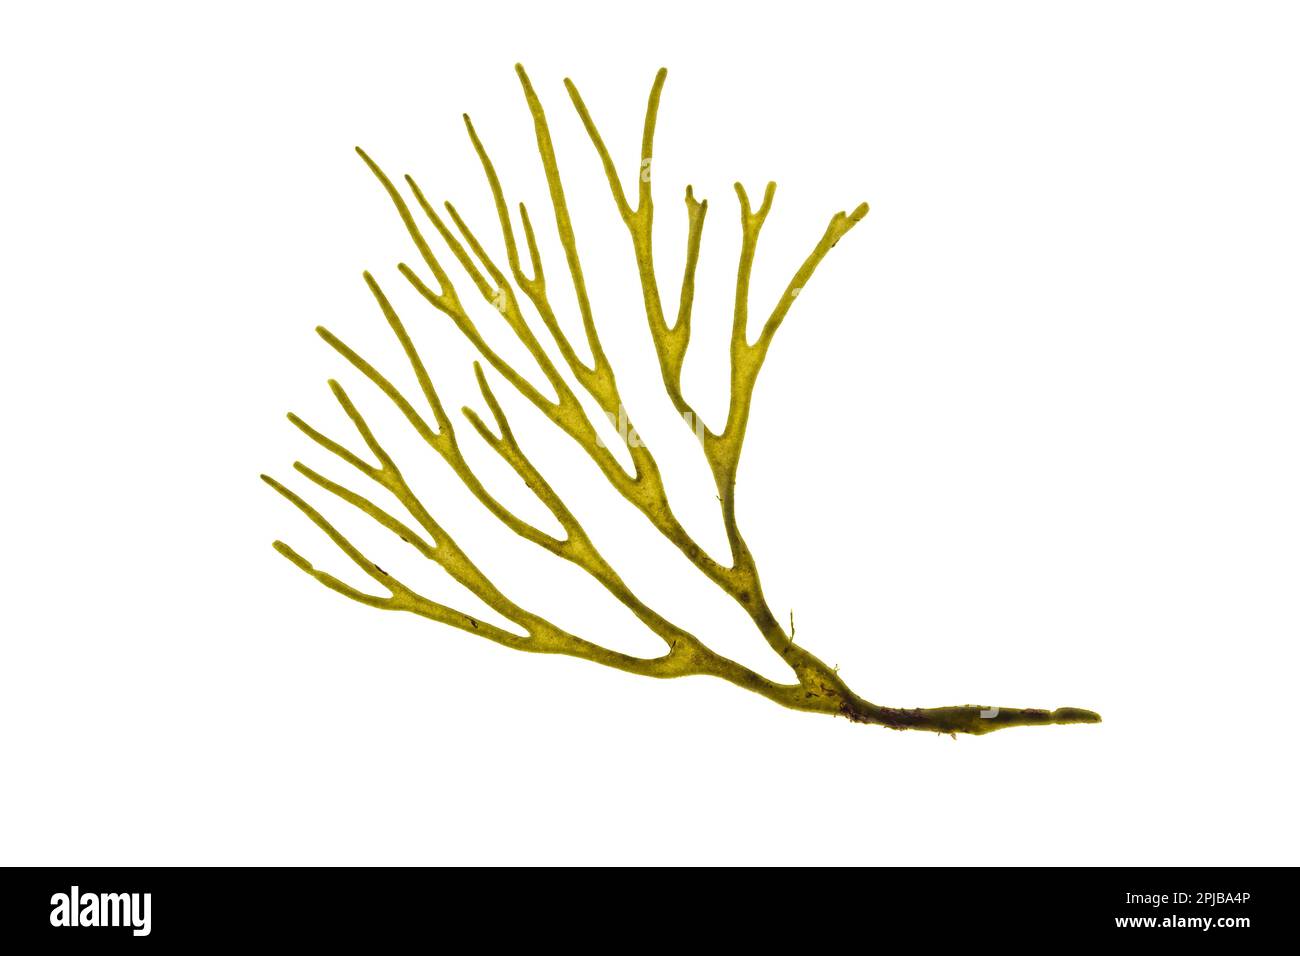 Velvet horn codium tomentosum or spongeweed green alga branch isolated on white. Stock Photo